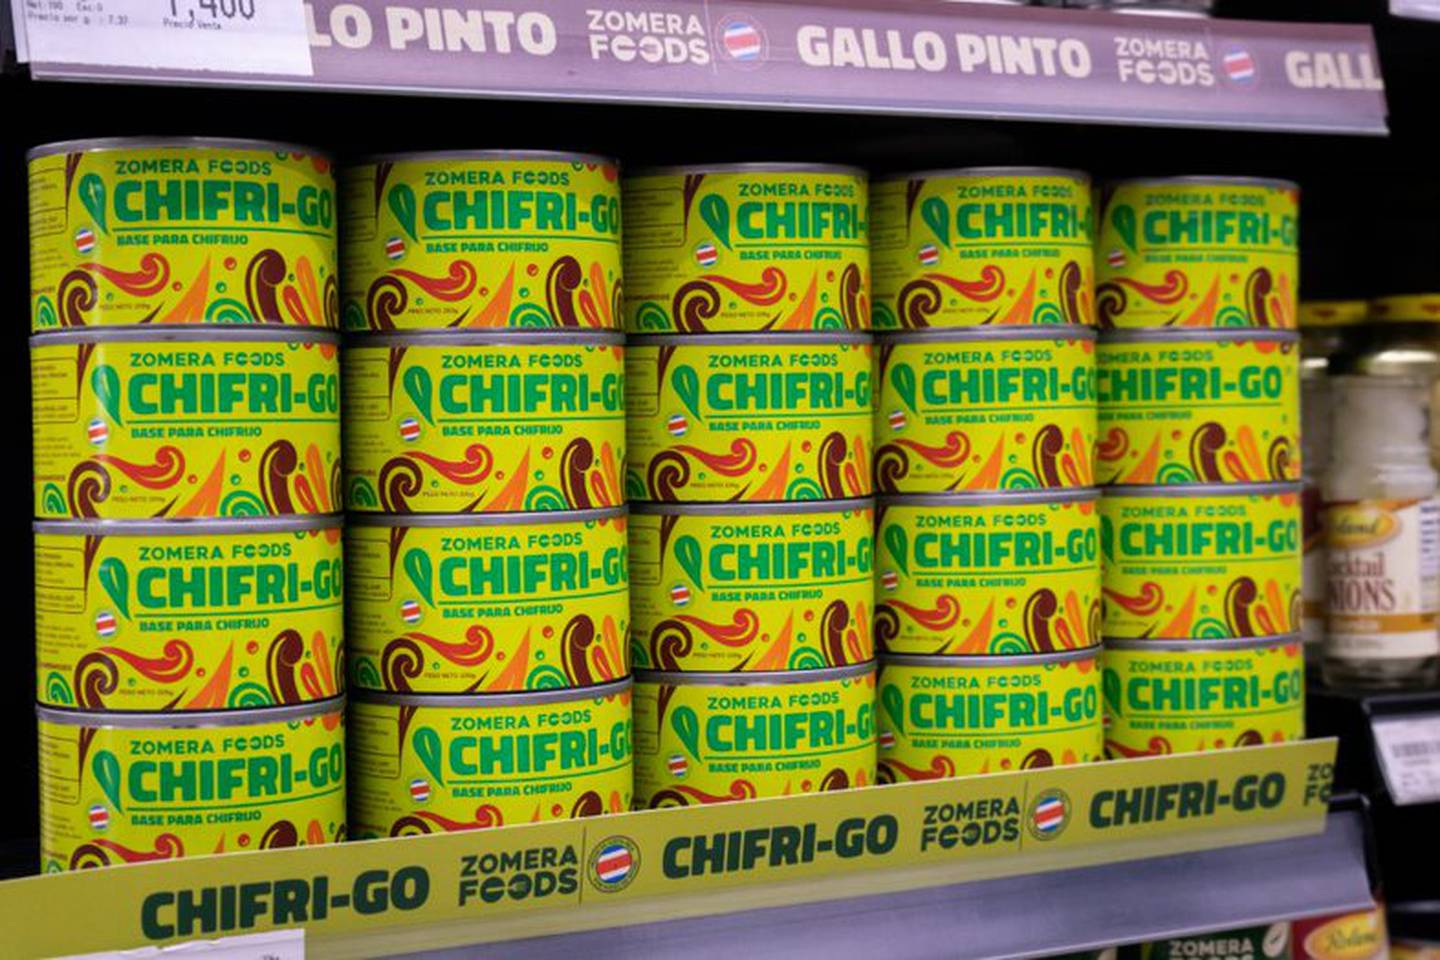 Chifrijo, Gallopinto, Arroz con siempre y hasta picadillo de papa con chorizo, ahora los puede encontrar enlatados gracias a Zomera Foods, emprendimiento de , Gabriel y Jaime Mesalles y Enrique Ramírez.